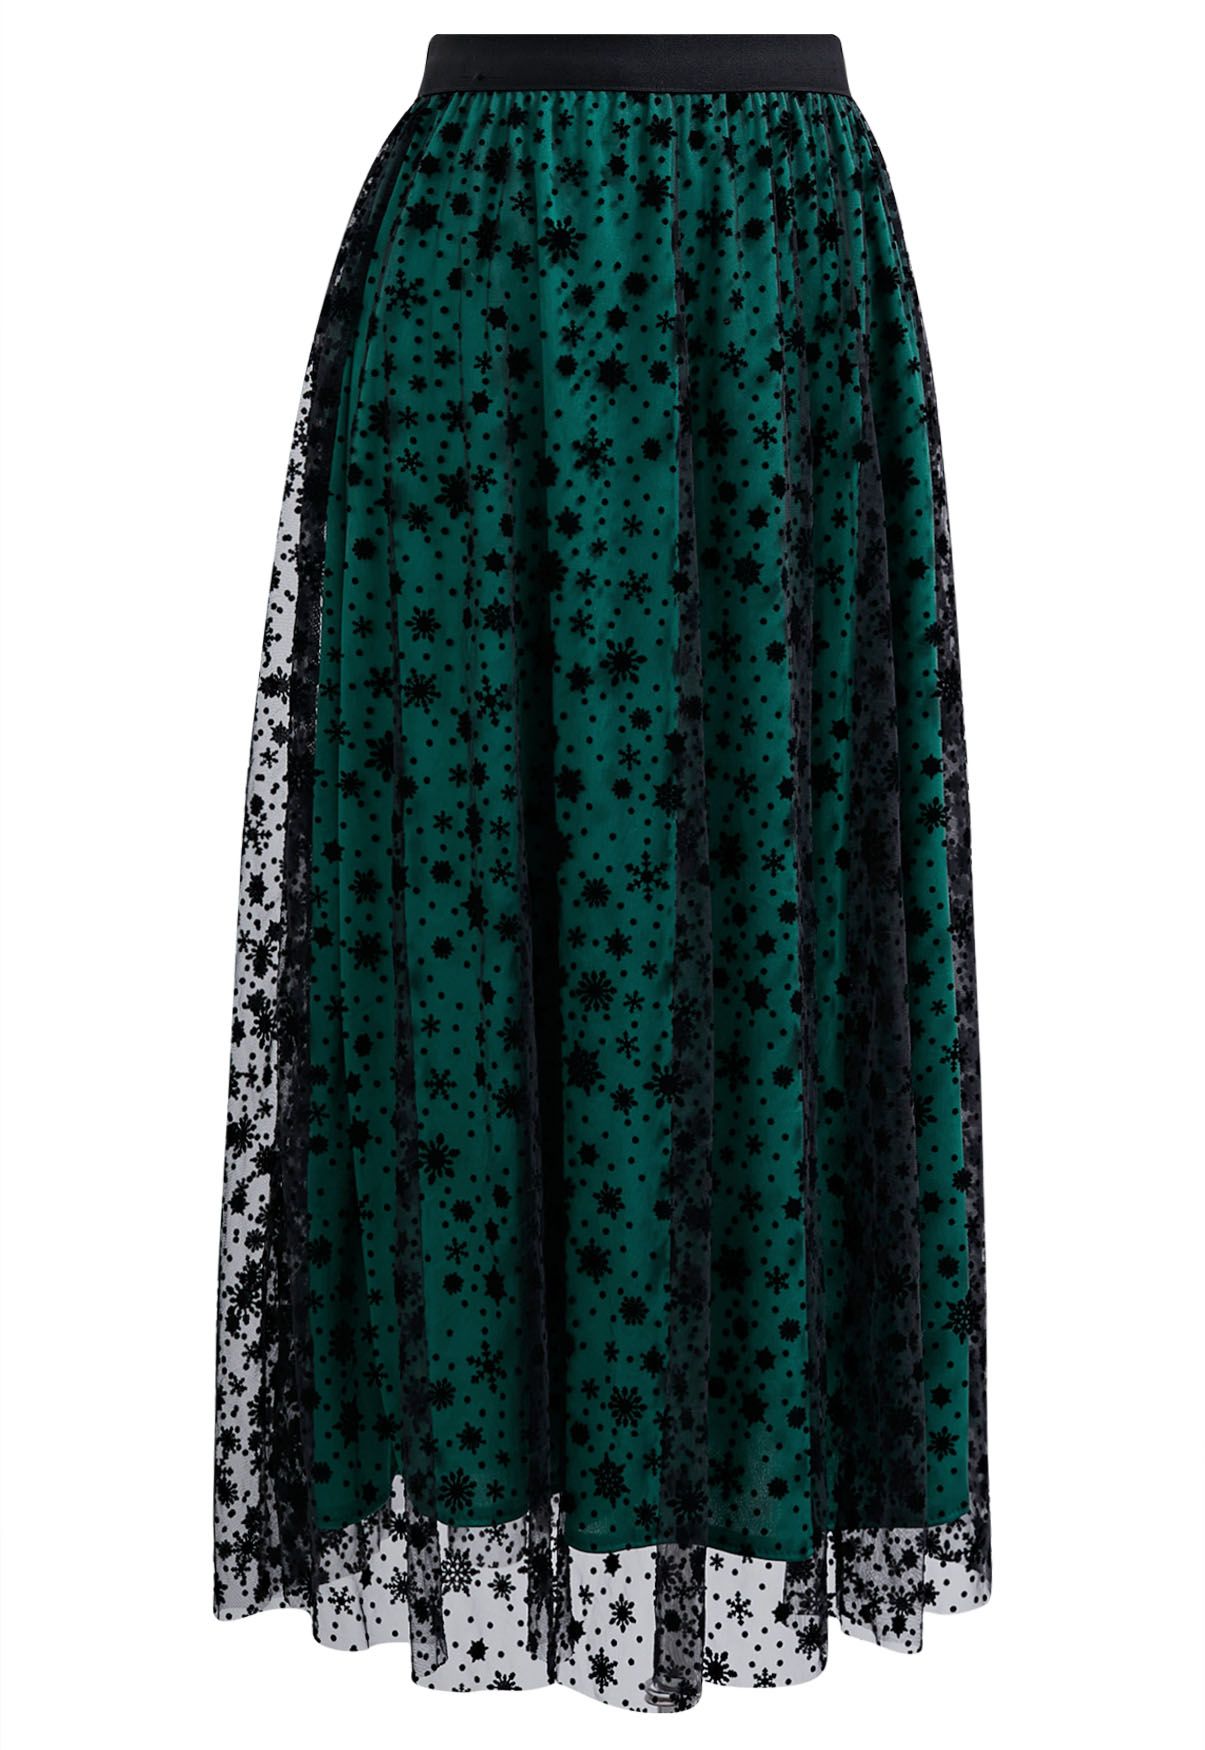 Velvet Snowflake Mesh Tulle Midi Skirt in Dark Green - Retro, Indie and ...